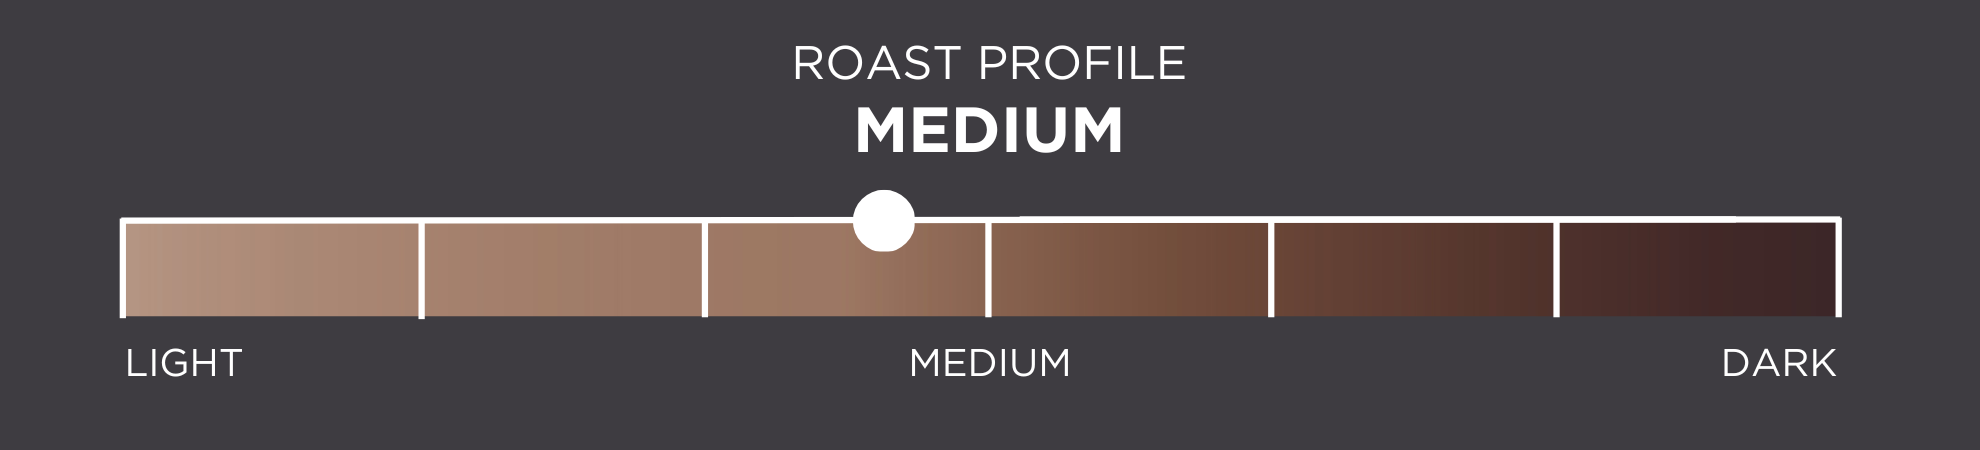 Roast Profile: light to dark - 3.5 / 7 (medium roast)